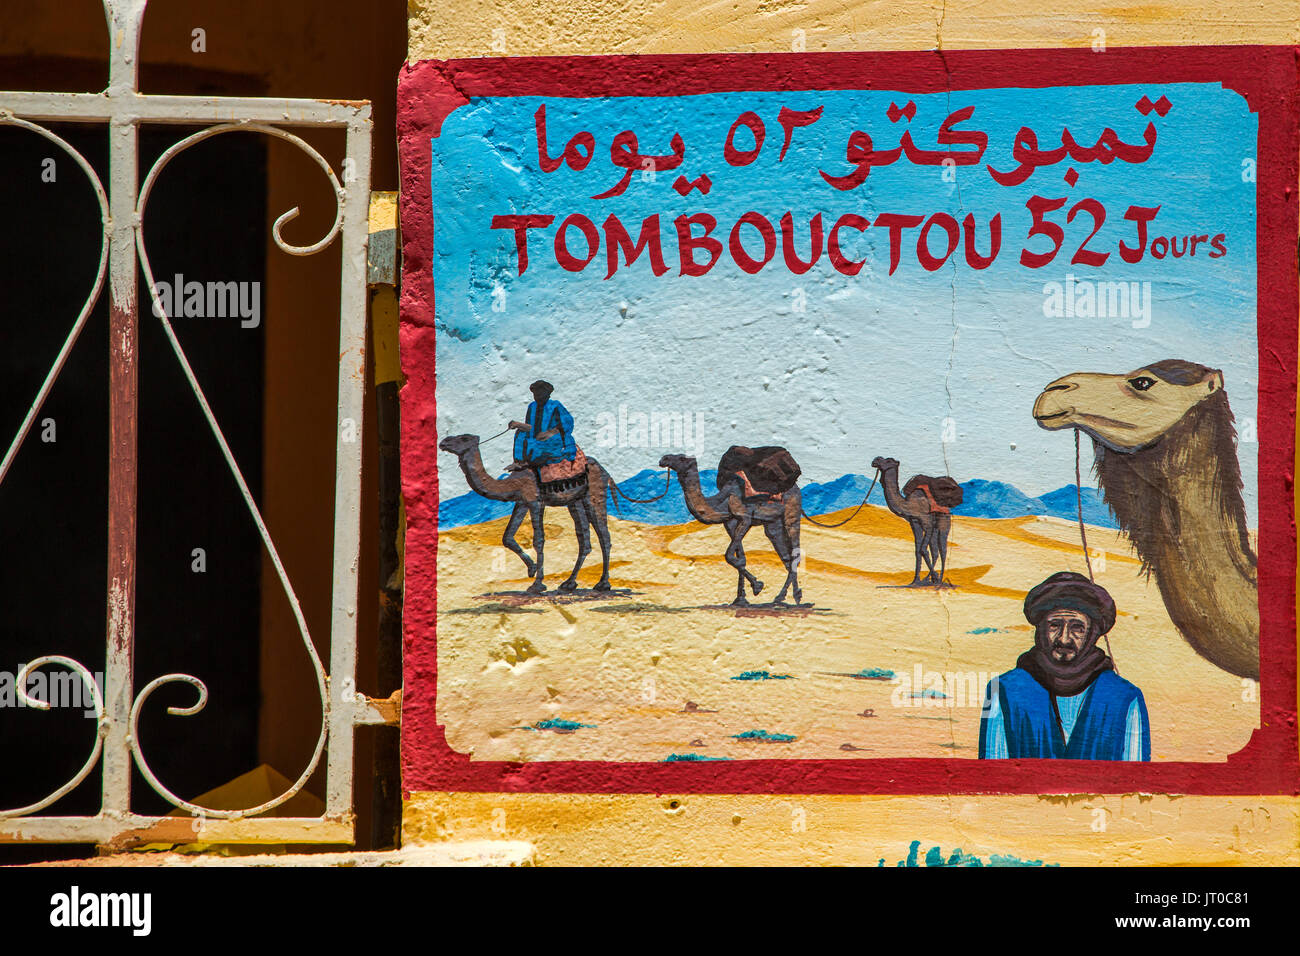 Tombouctou 52 Jours Sign in una agenzia di viaggi per il deserto, Ouarzazate. Il Marocco, Maghreb Nord Africa Foto Stock